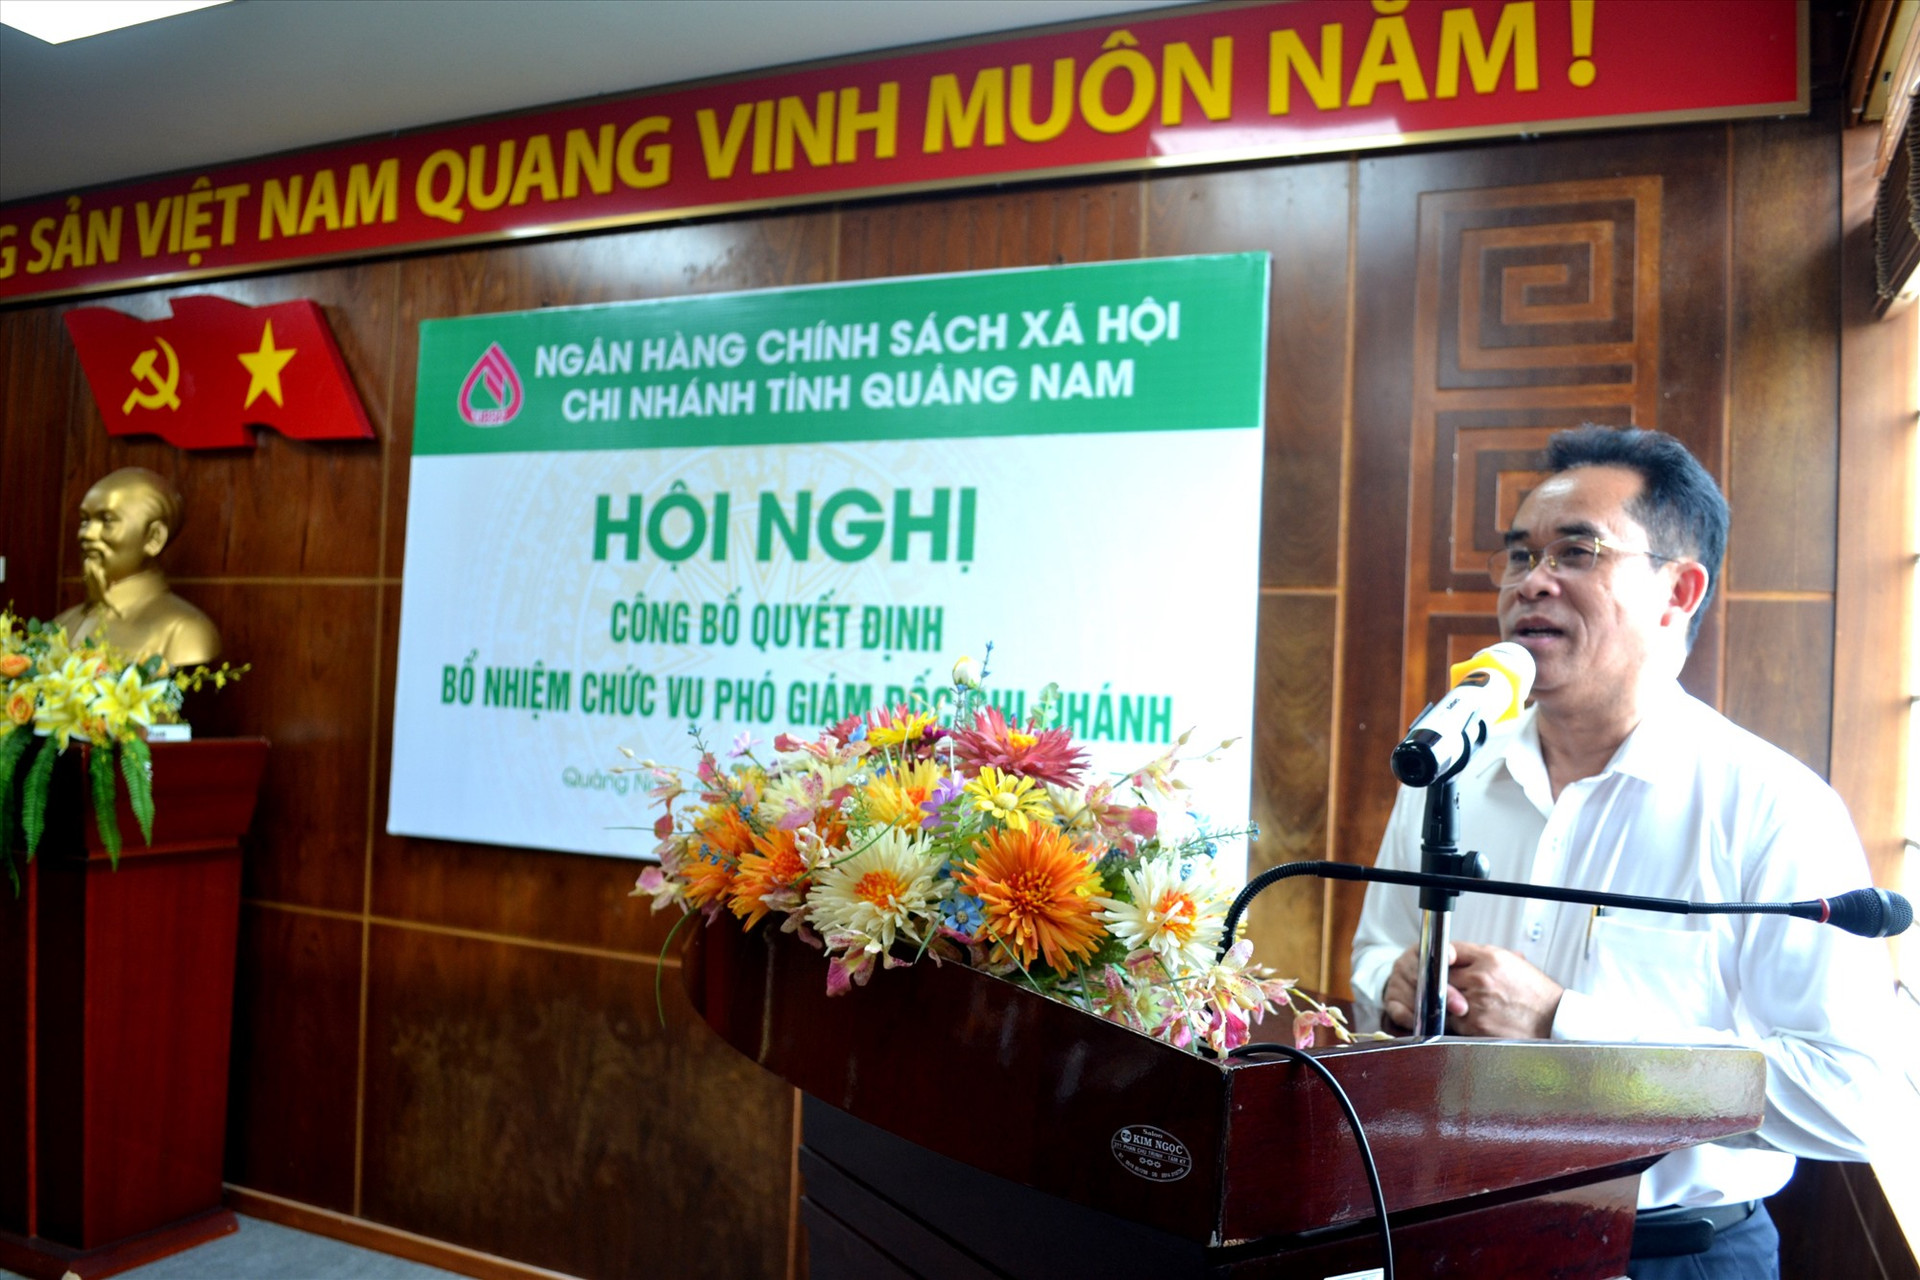 Phó Chủ tịch UBND tỉnh Trần Anh Tuấn - Trưởng Ban đại diện HĐQT Ngân hàng CSXH Quảng Nam phát biểu tại hội nghị. Ảnh: Q.VIỆT